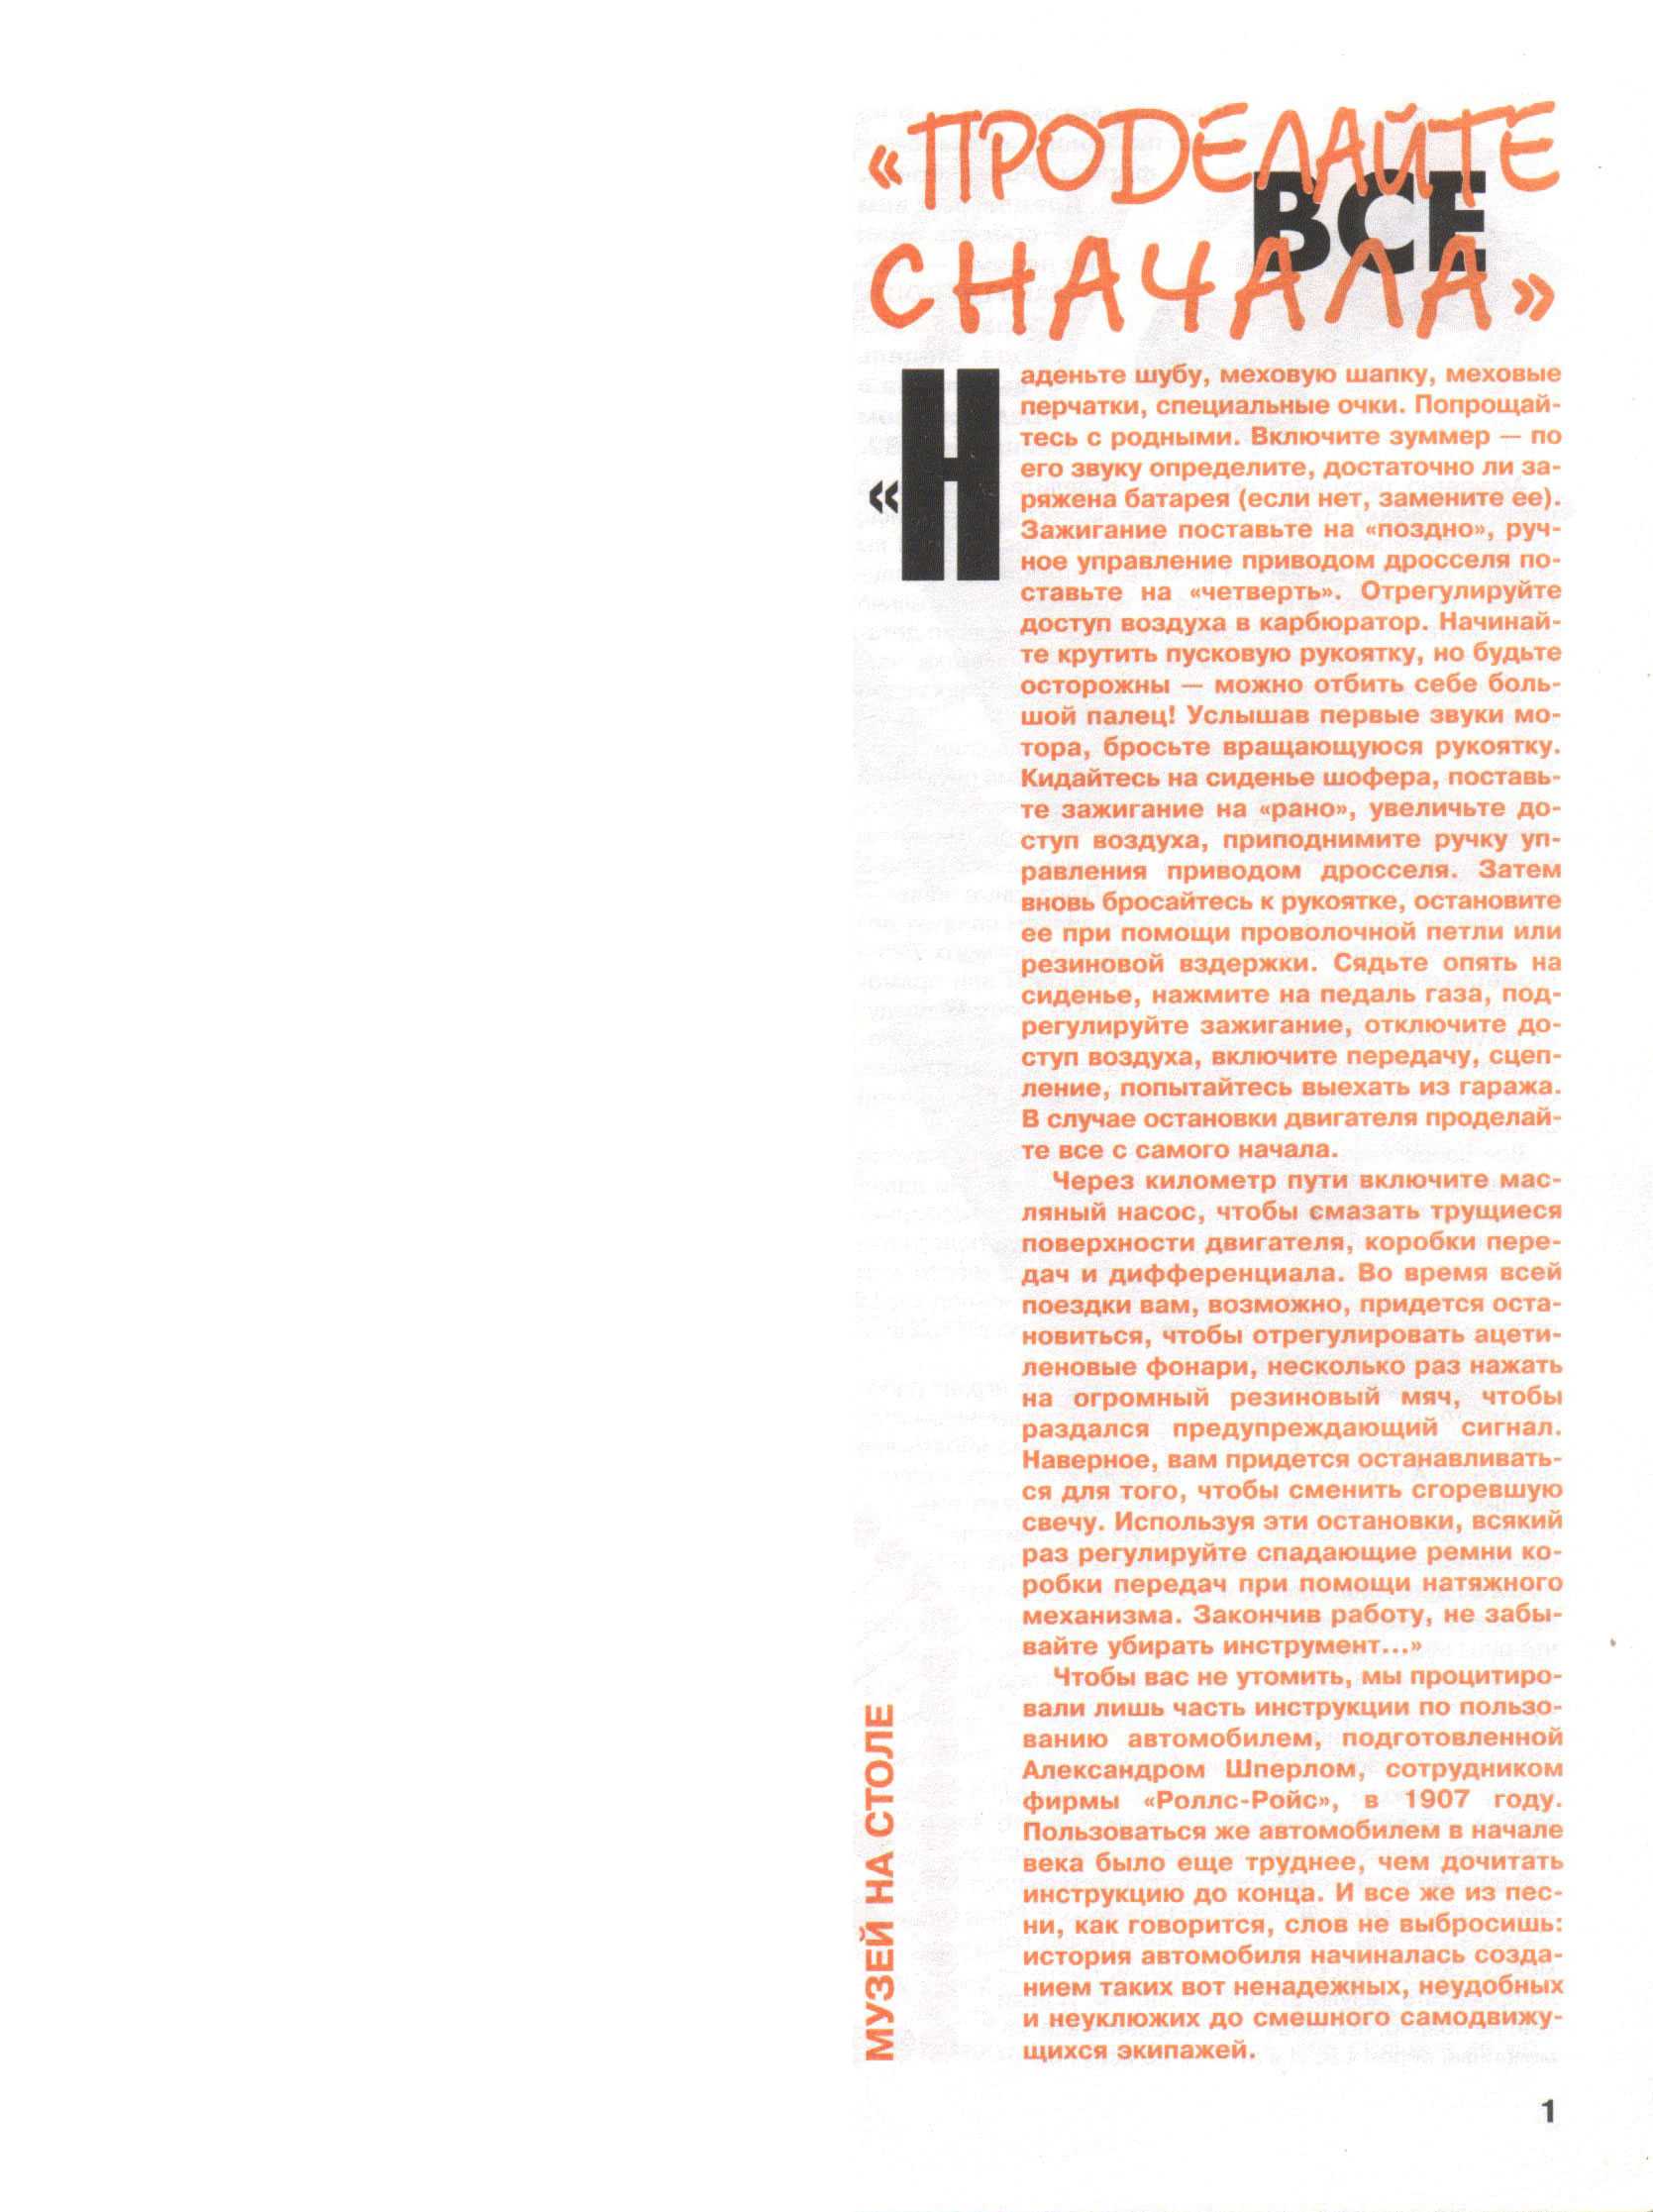 "Левша" 4, 1998, 1 c.